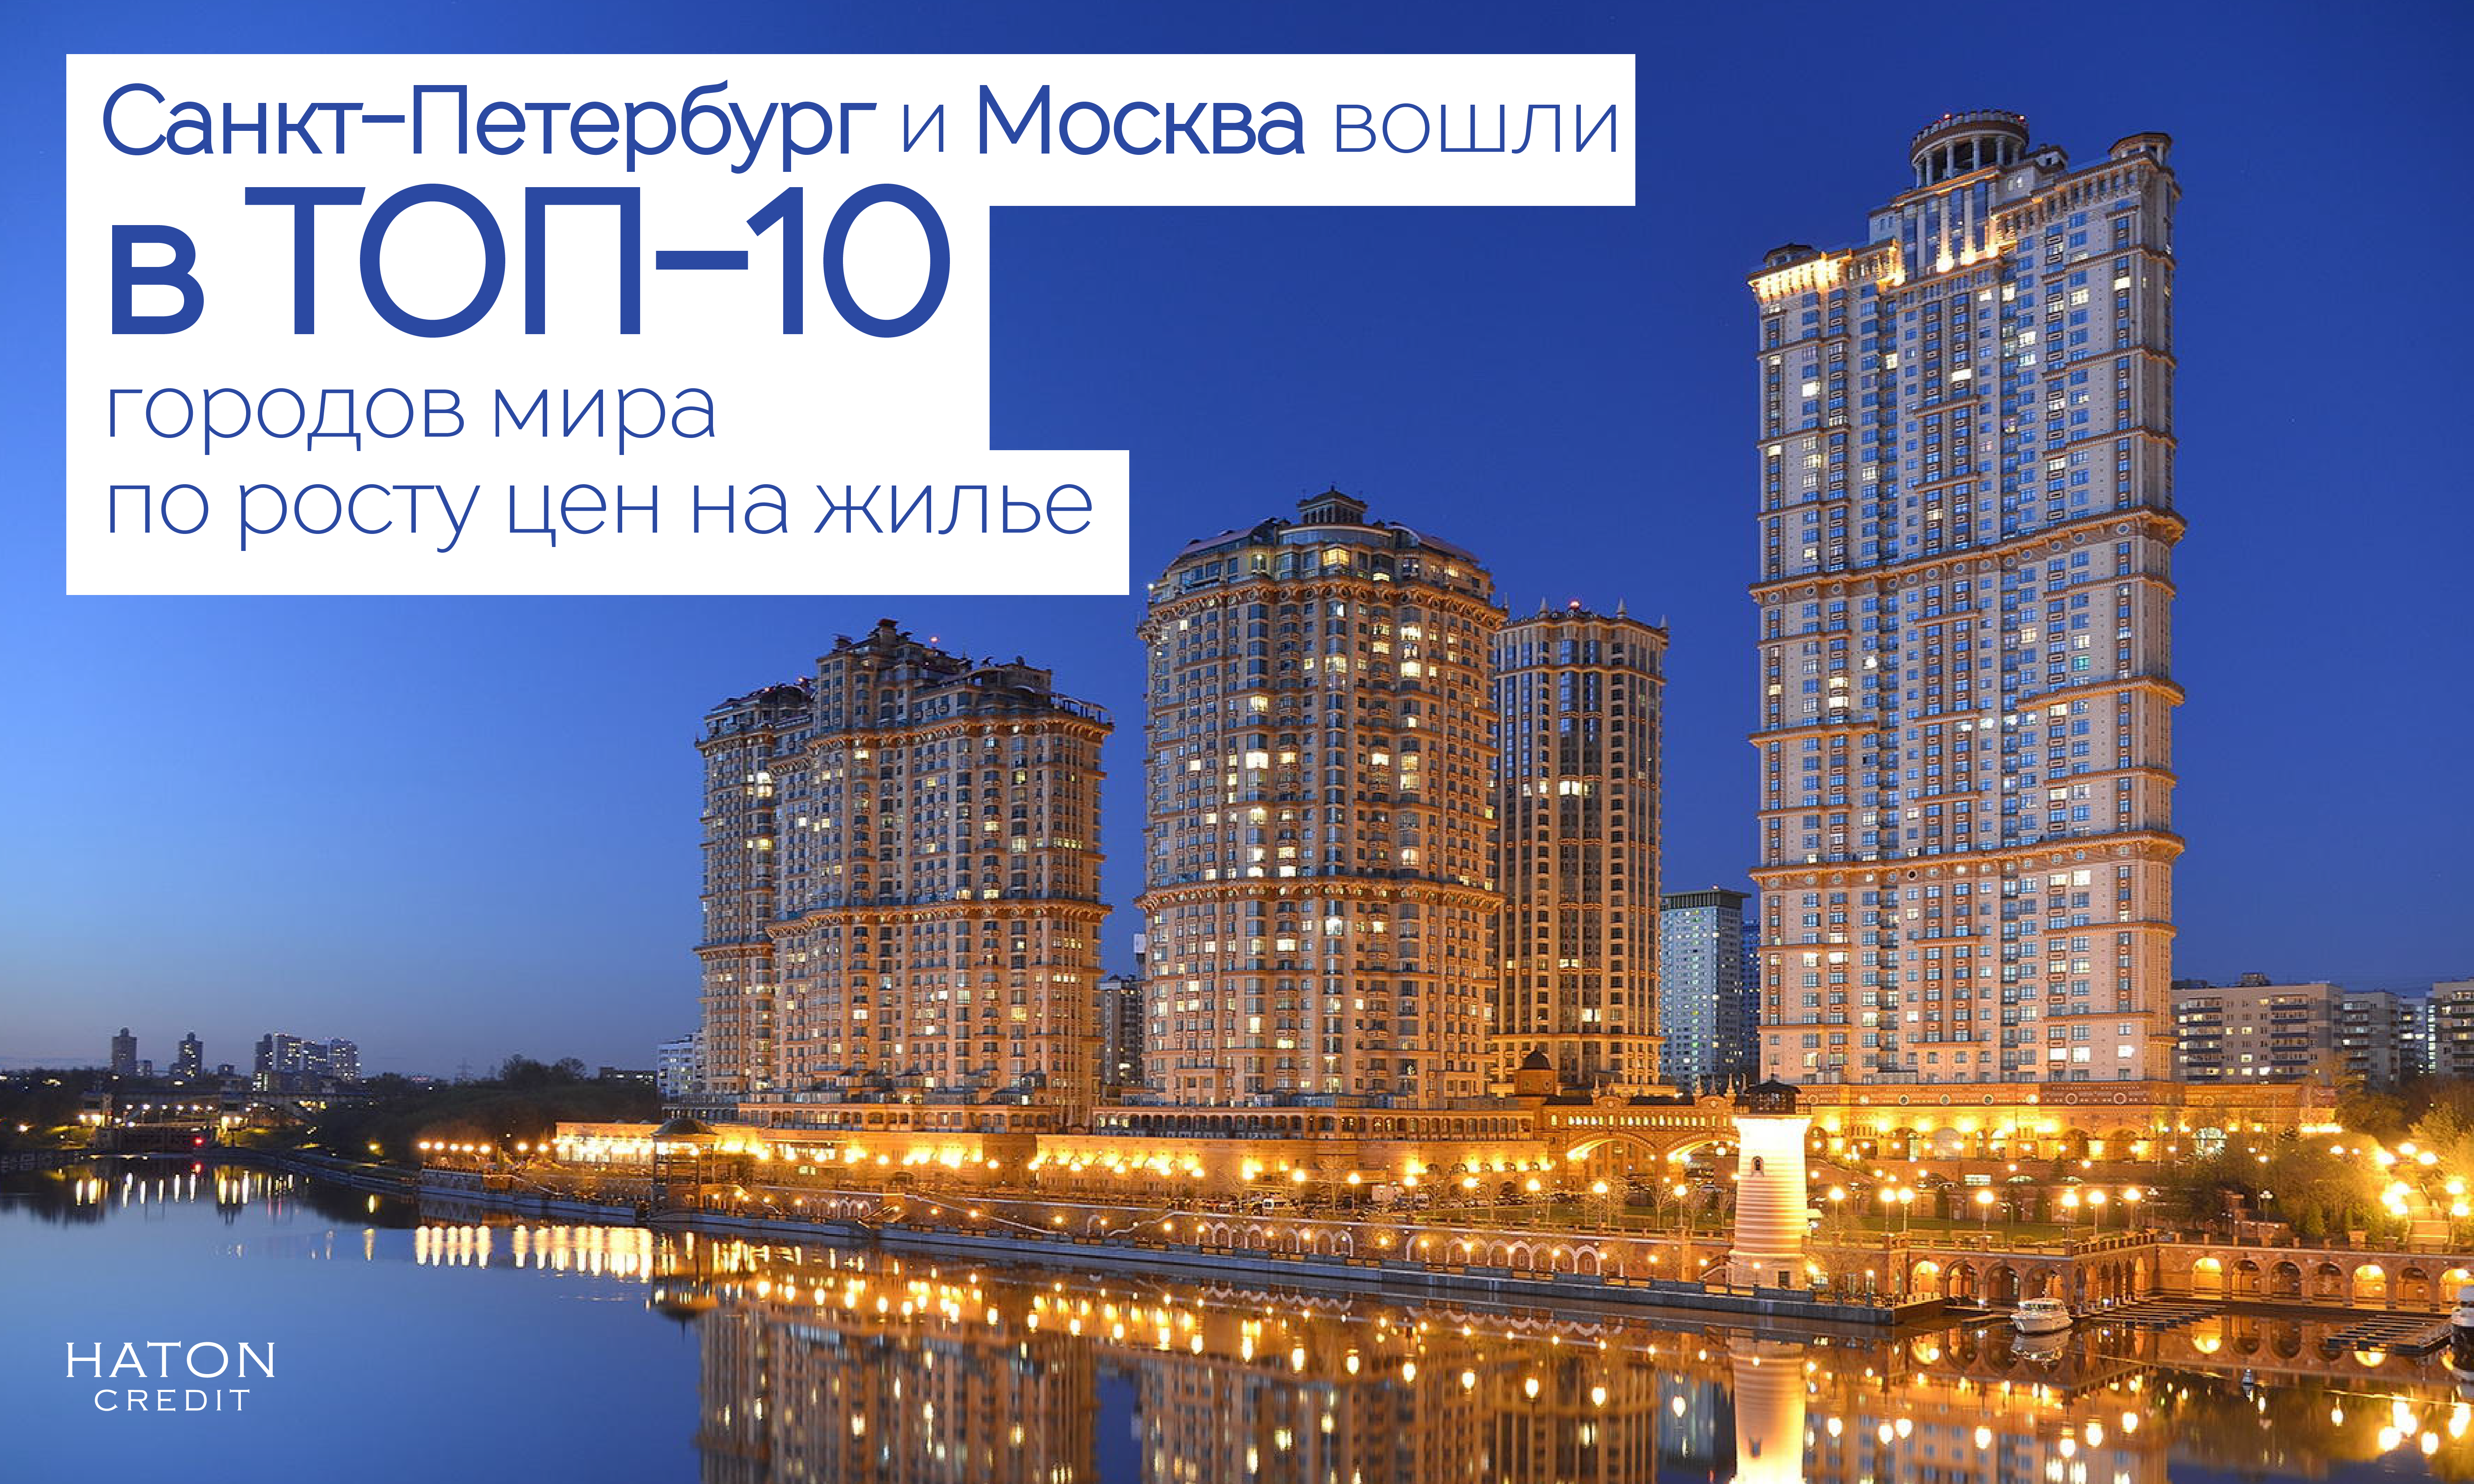 Санкт-Петербург и Москва вошли в ТОП-10 городов мира по росту цен на жилье